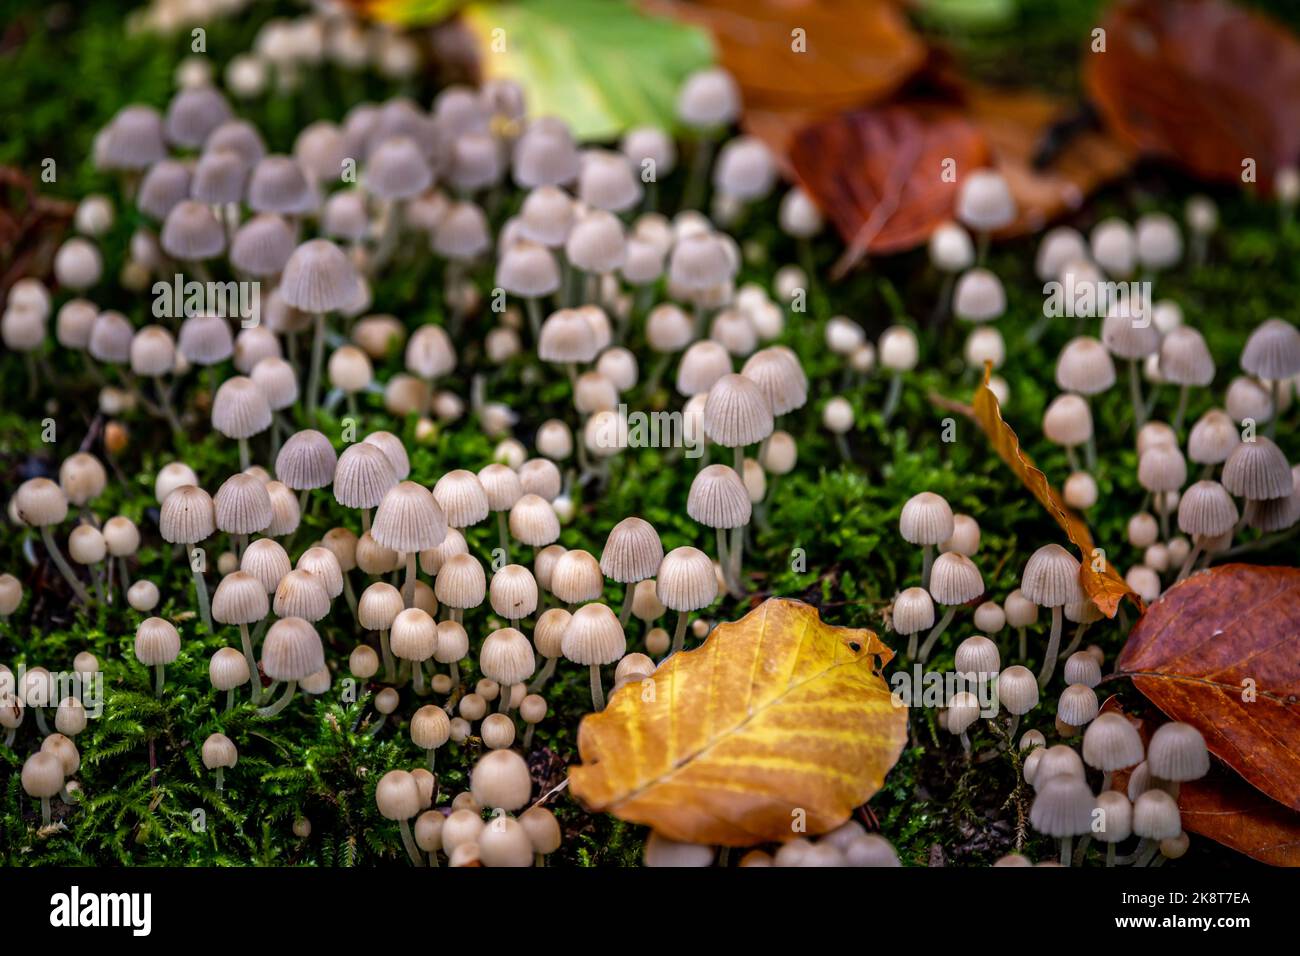 Coprinellus dissécatus. Casquette de fée. Chapeau de crumble trooping. Groupe de champignons avec des feuilles dans la nature. Banque D'Images